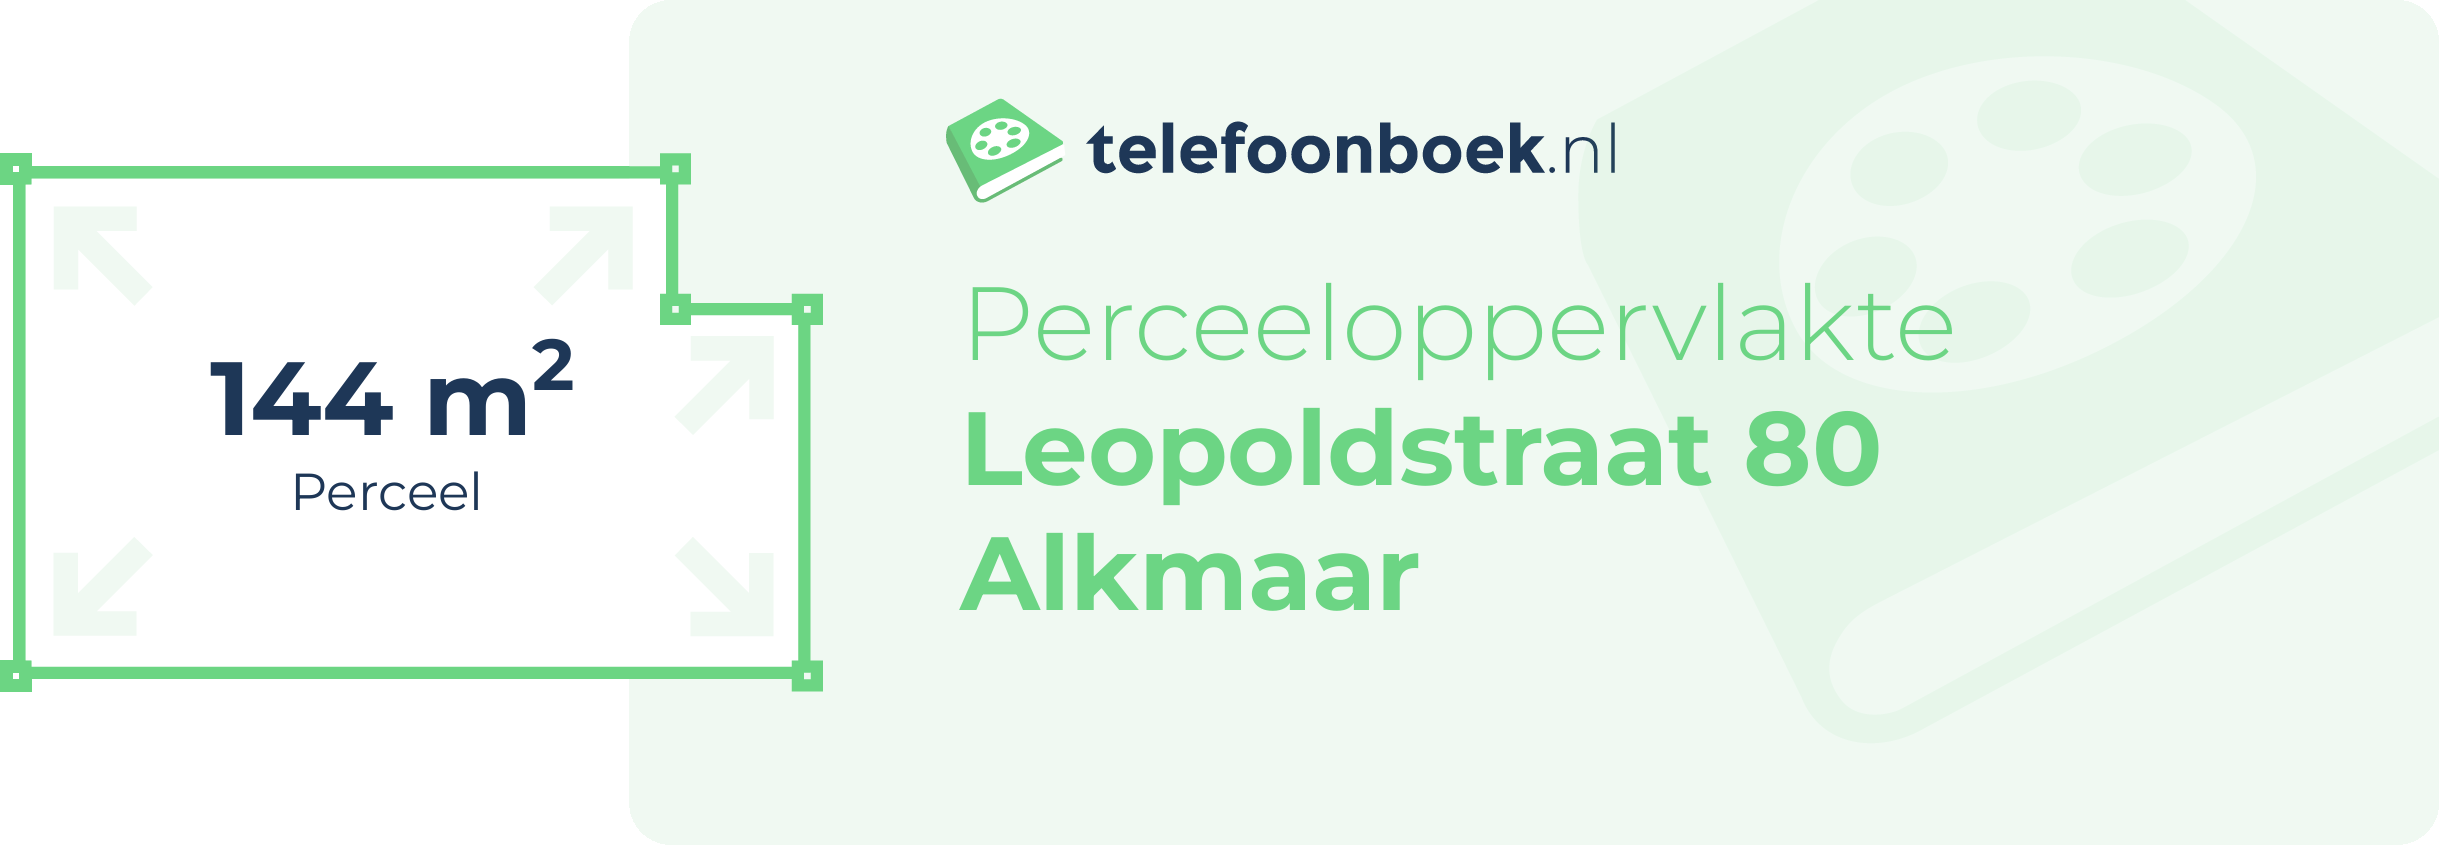 Perceeloppervlakte Leopoldstraat 80 Alkmaar